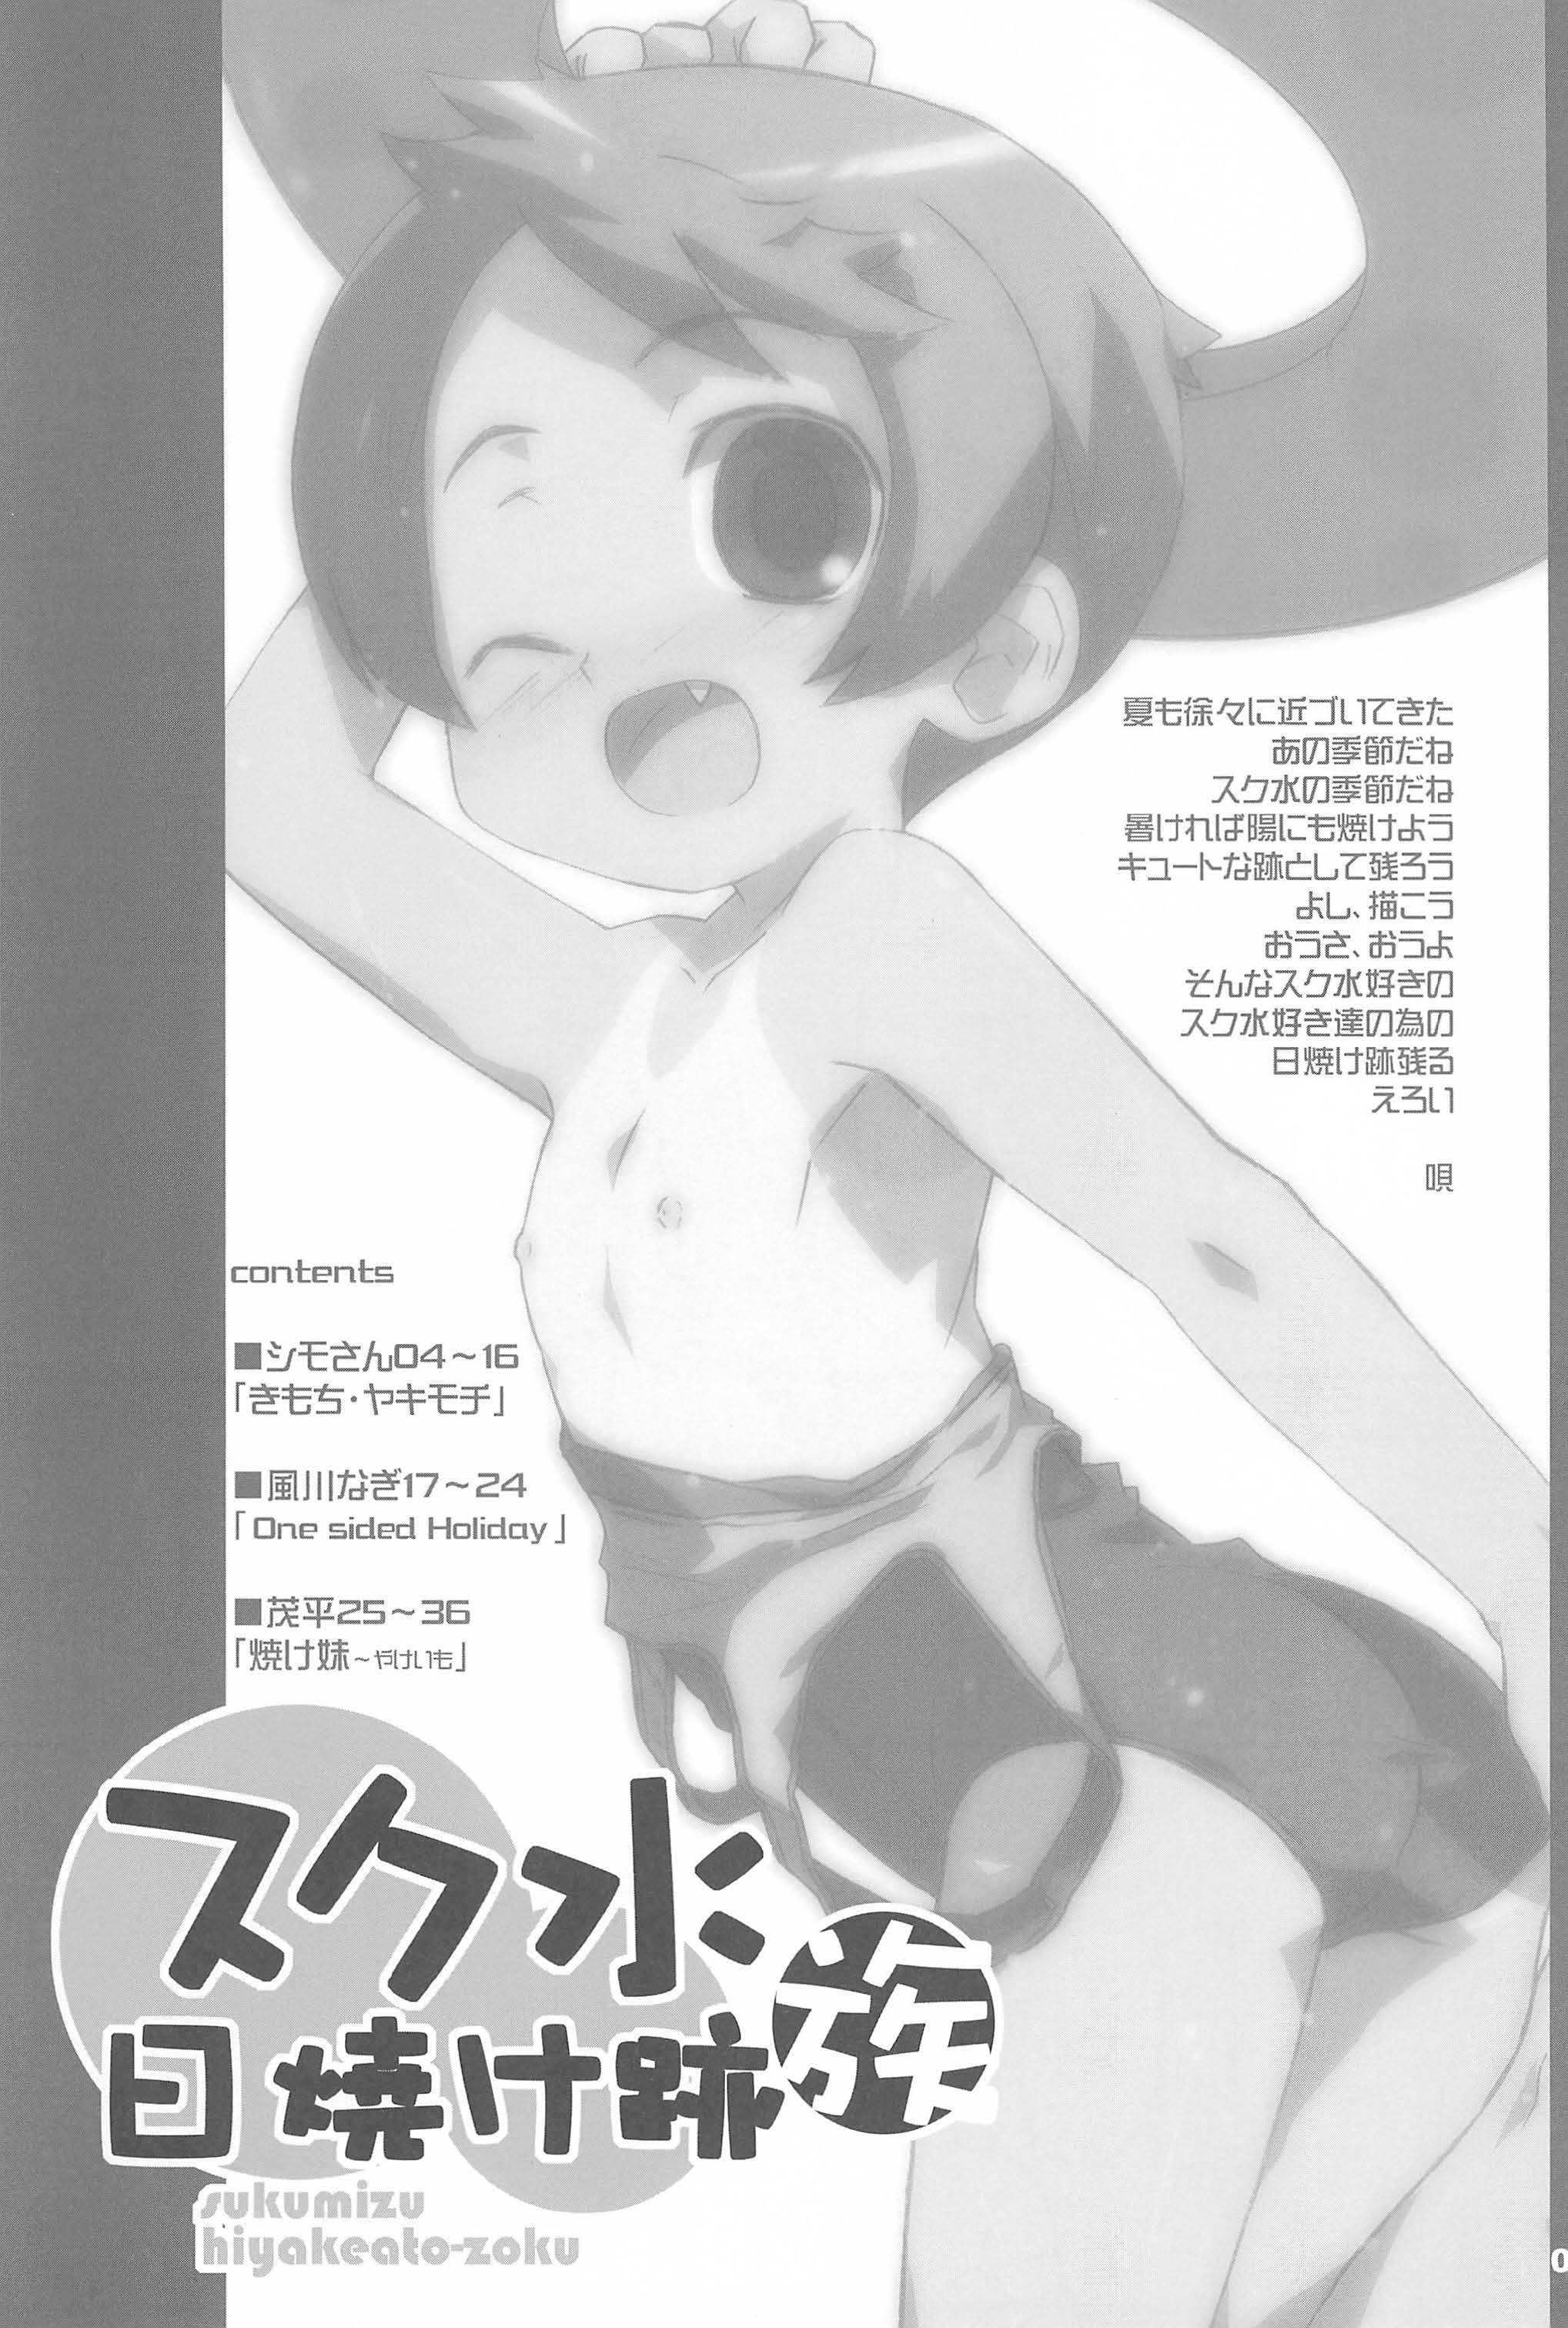 (COMITIA76) [Shimoboard (Shimosan)] Sukumizu Hiyakeato-zoku page 3 full